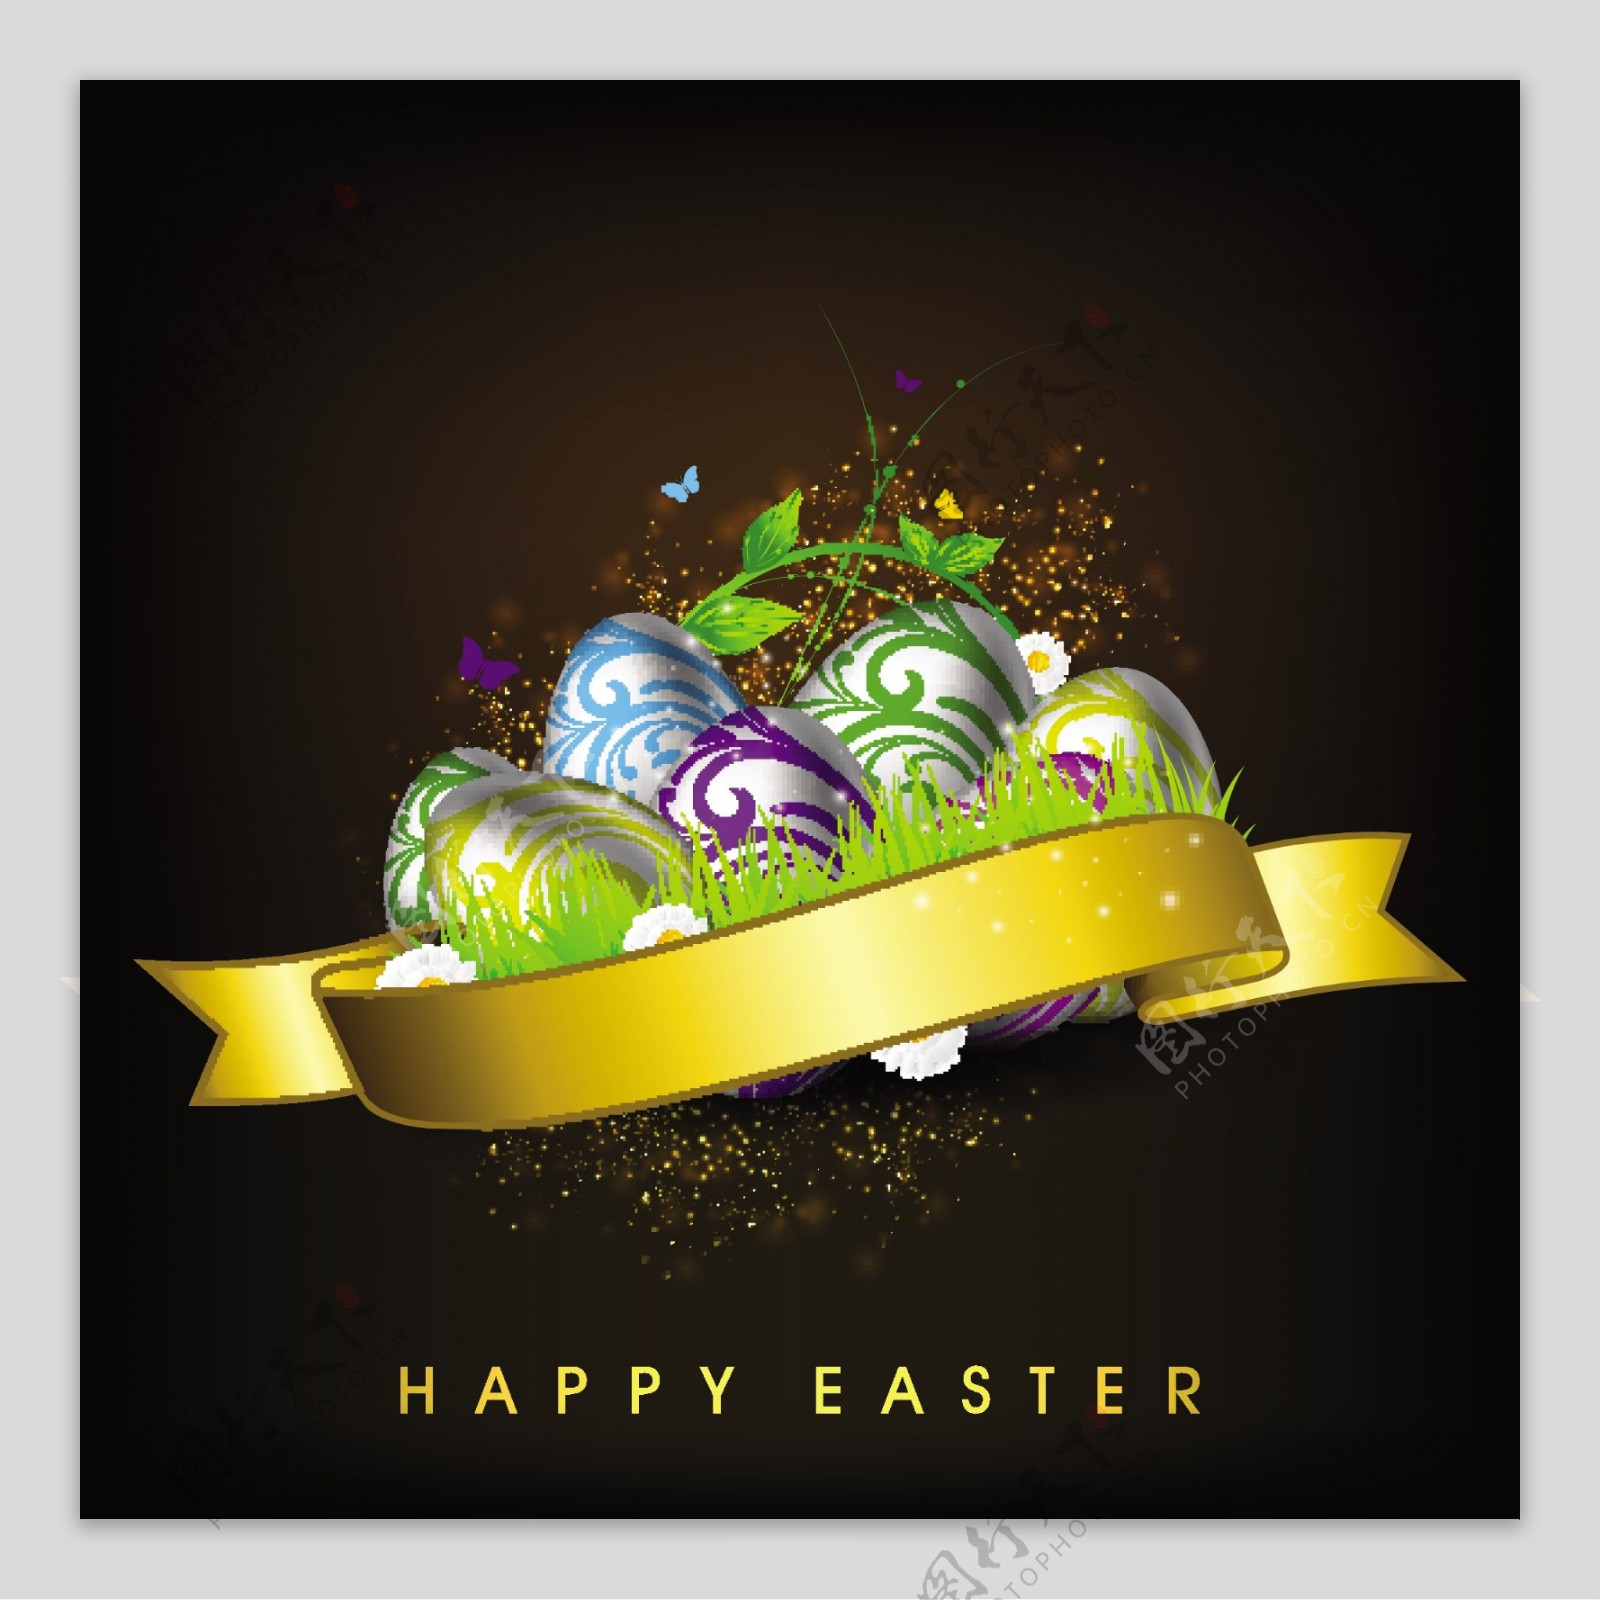 复活节快乐的背景或卡具有创造性和装饰蛋